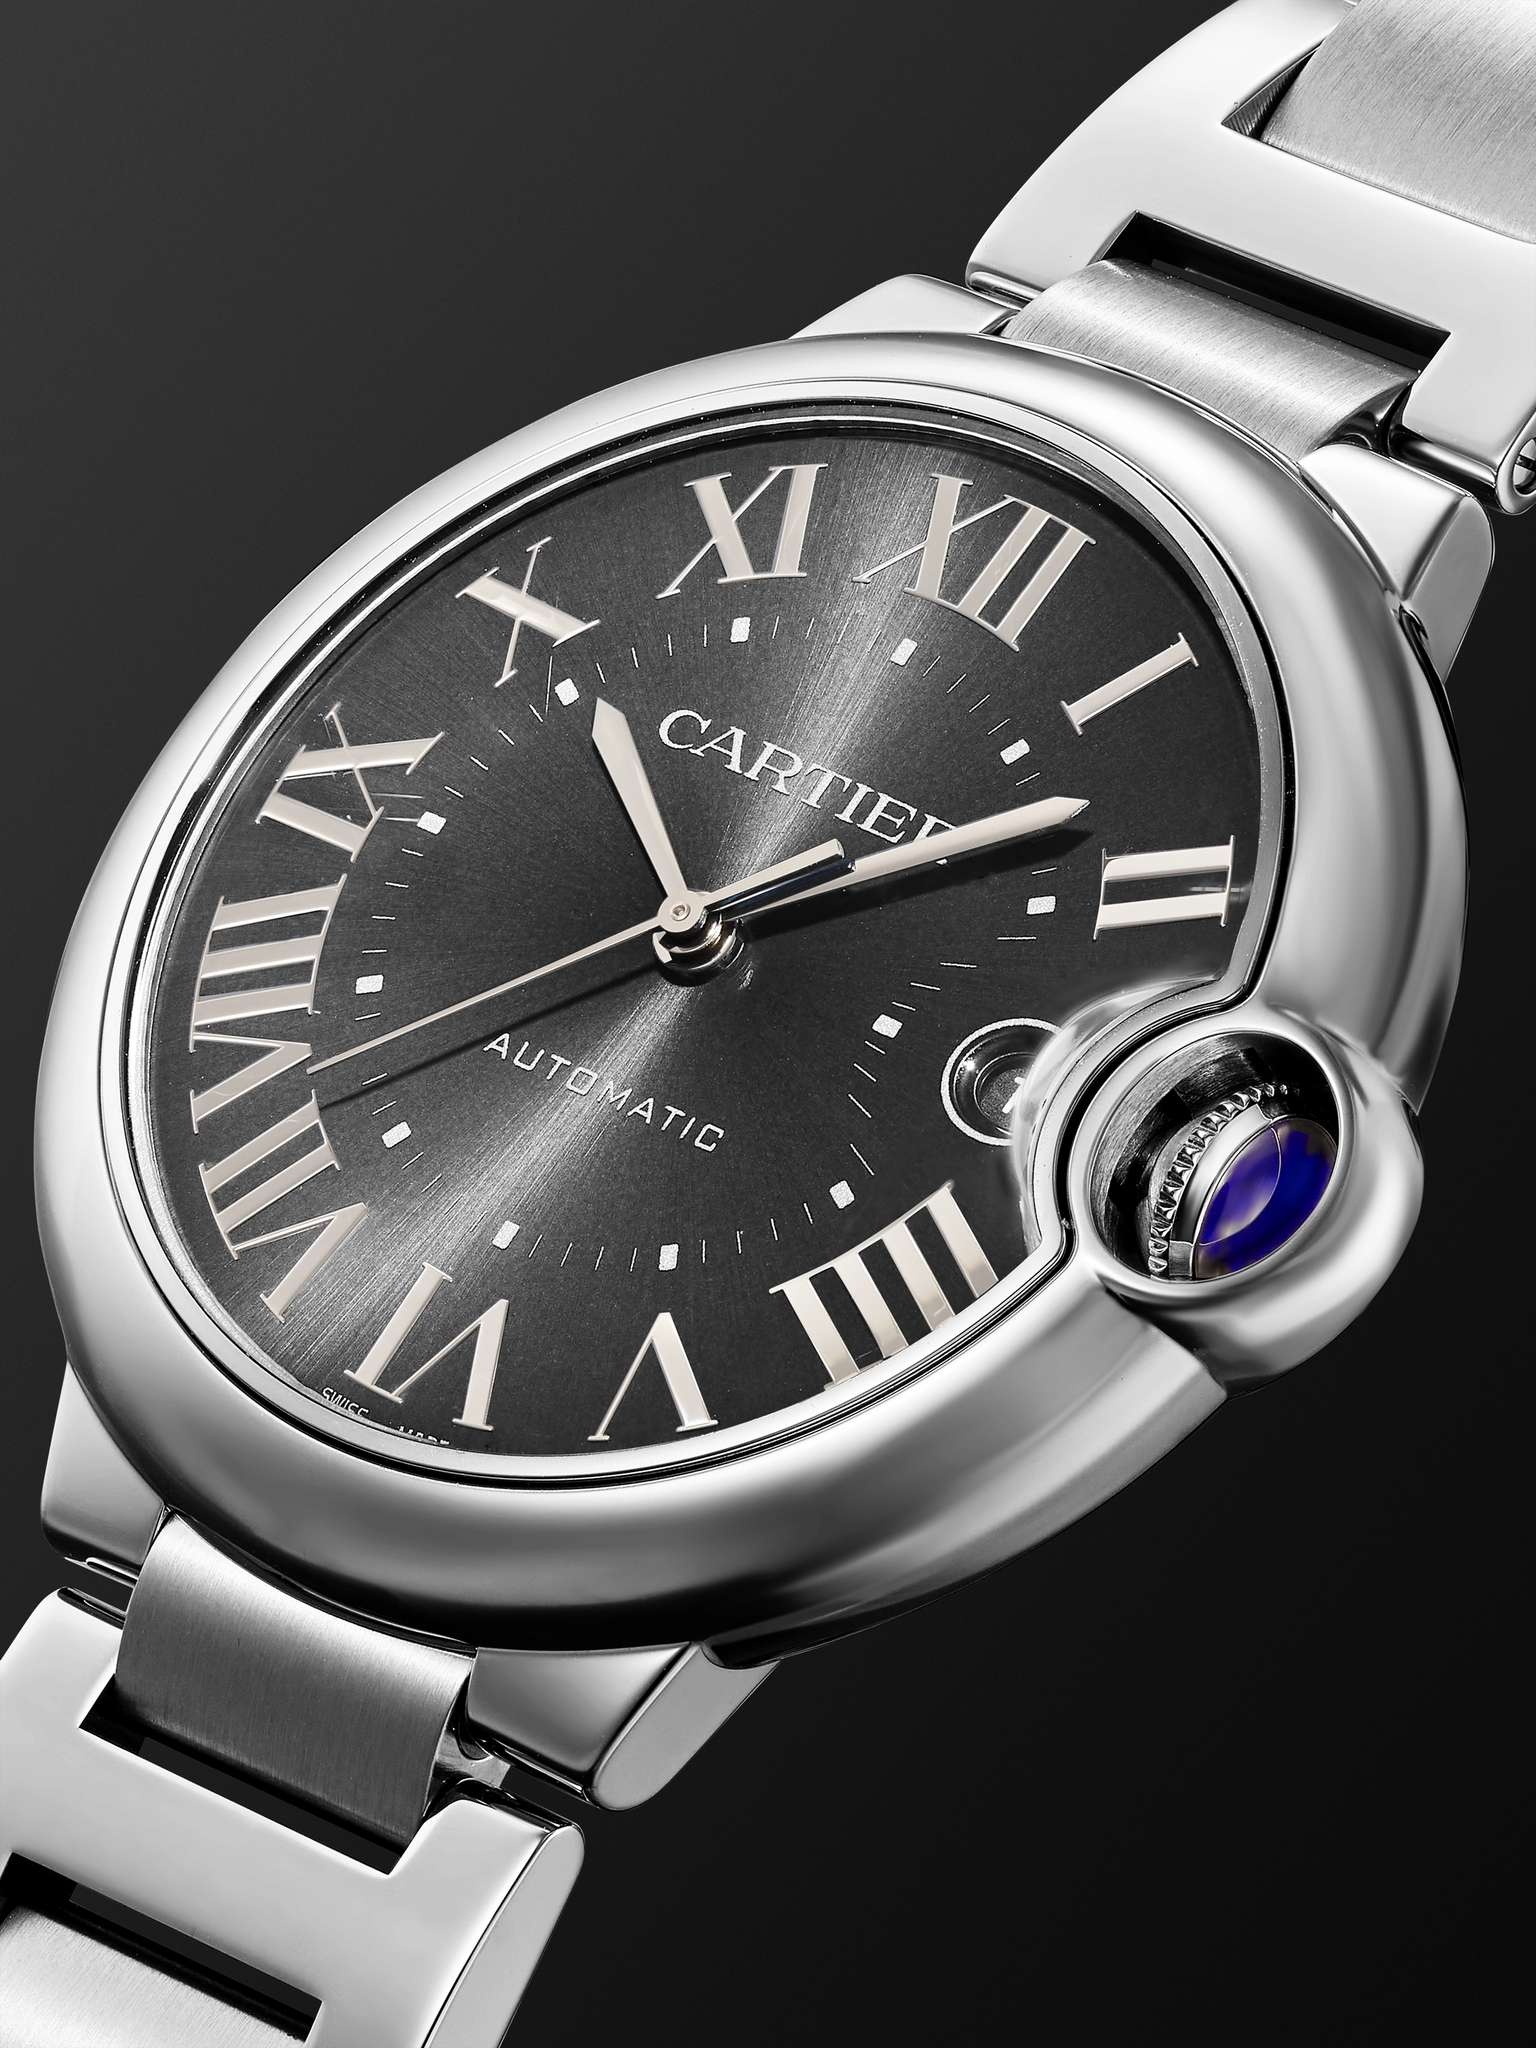 Ballon Bleu de Cartier Automatic 40mm Stainless Steel Watch, Ref. No. WSBB0060 - 3